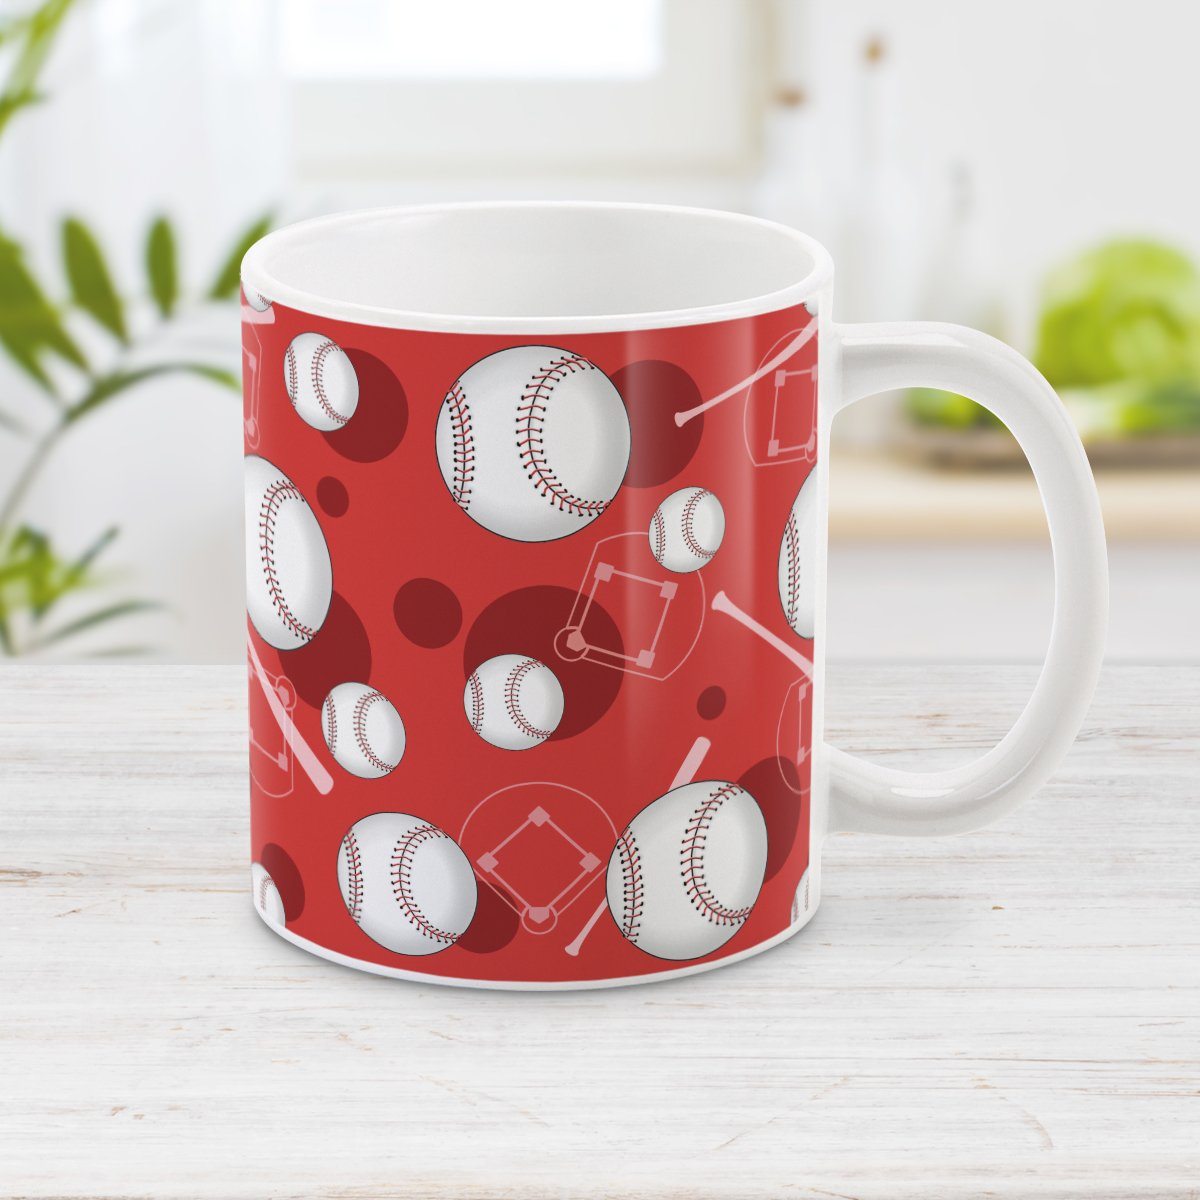 Red Baseball Mug - Baseball Themed Pattern Red Baseball Mug at Amy's Coffee Mugs